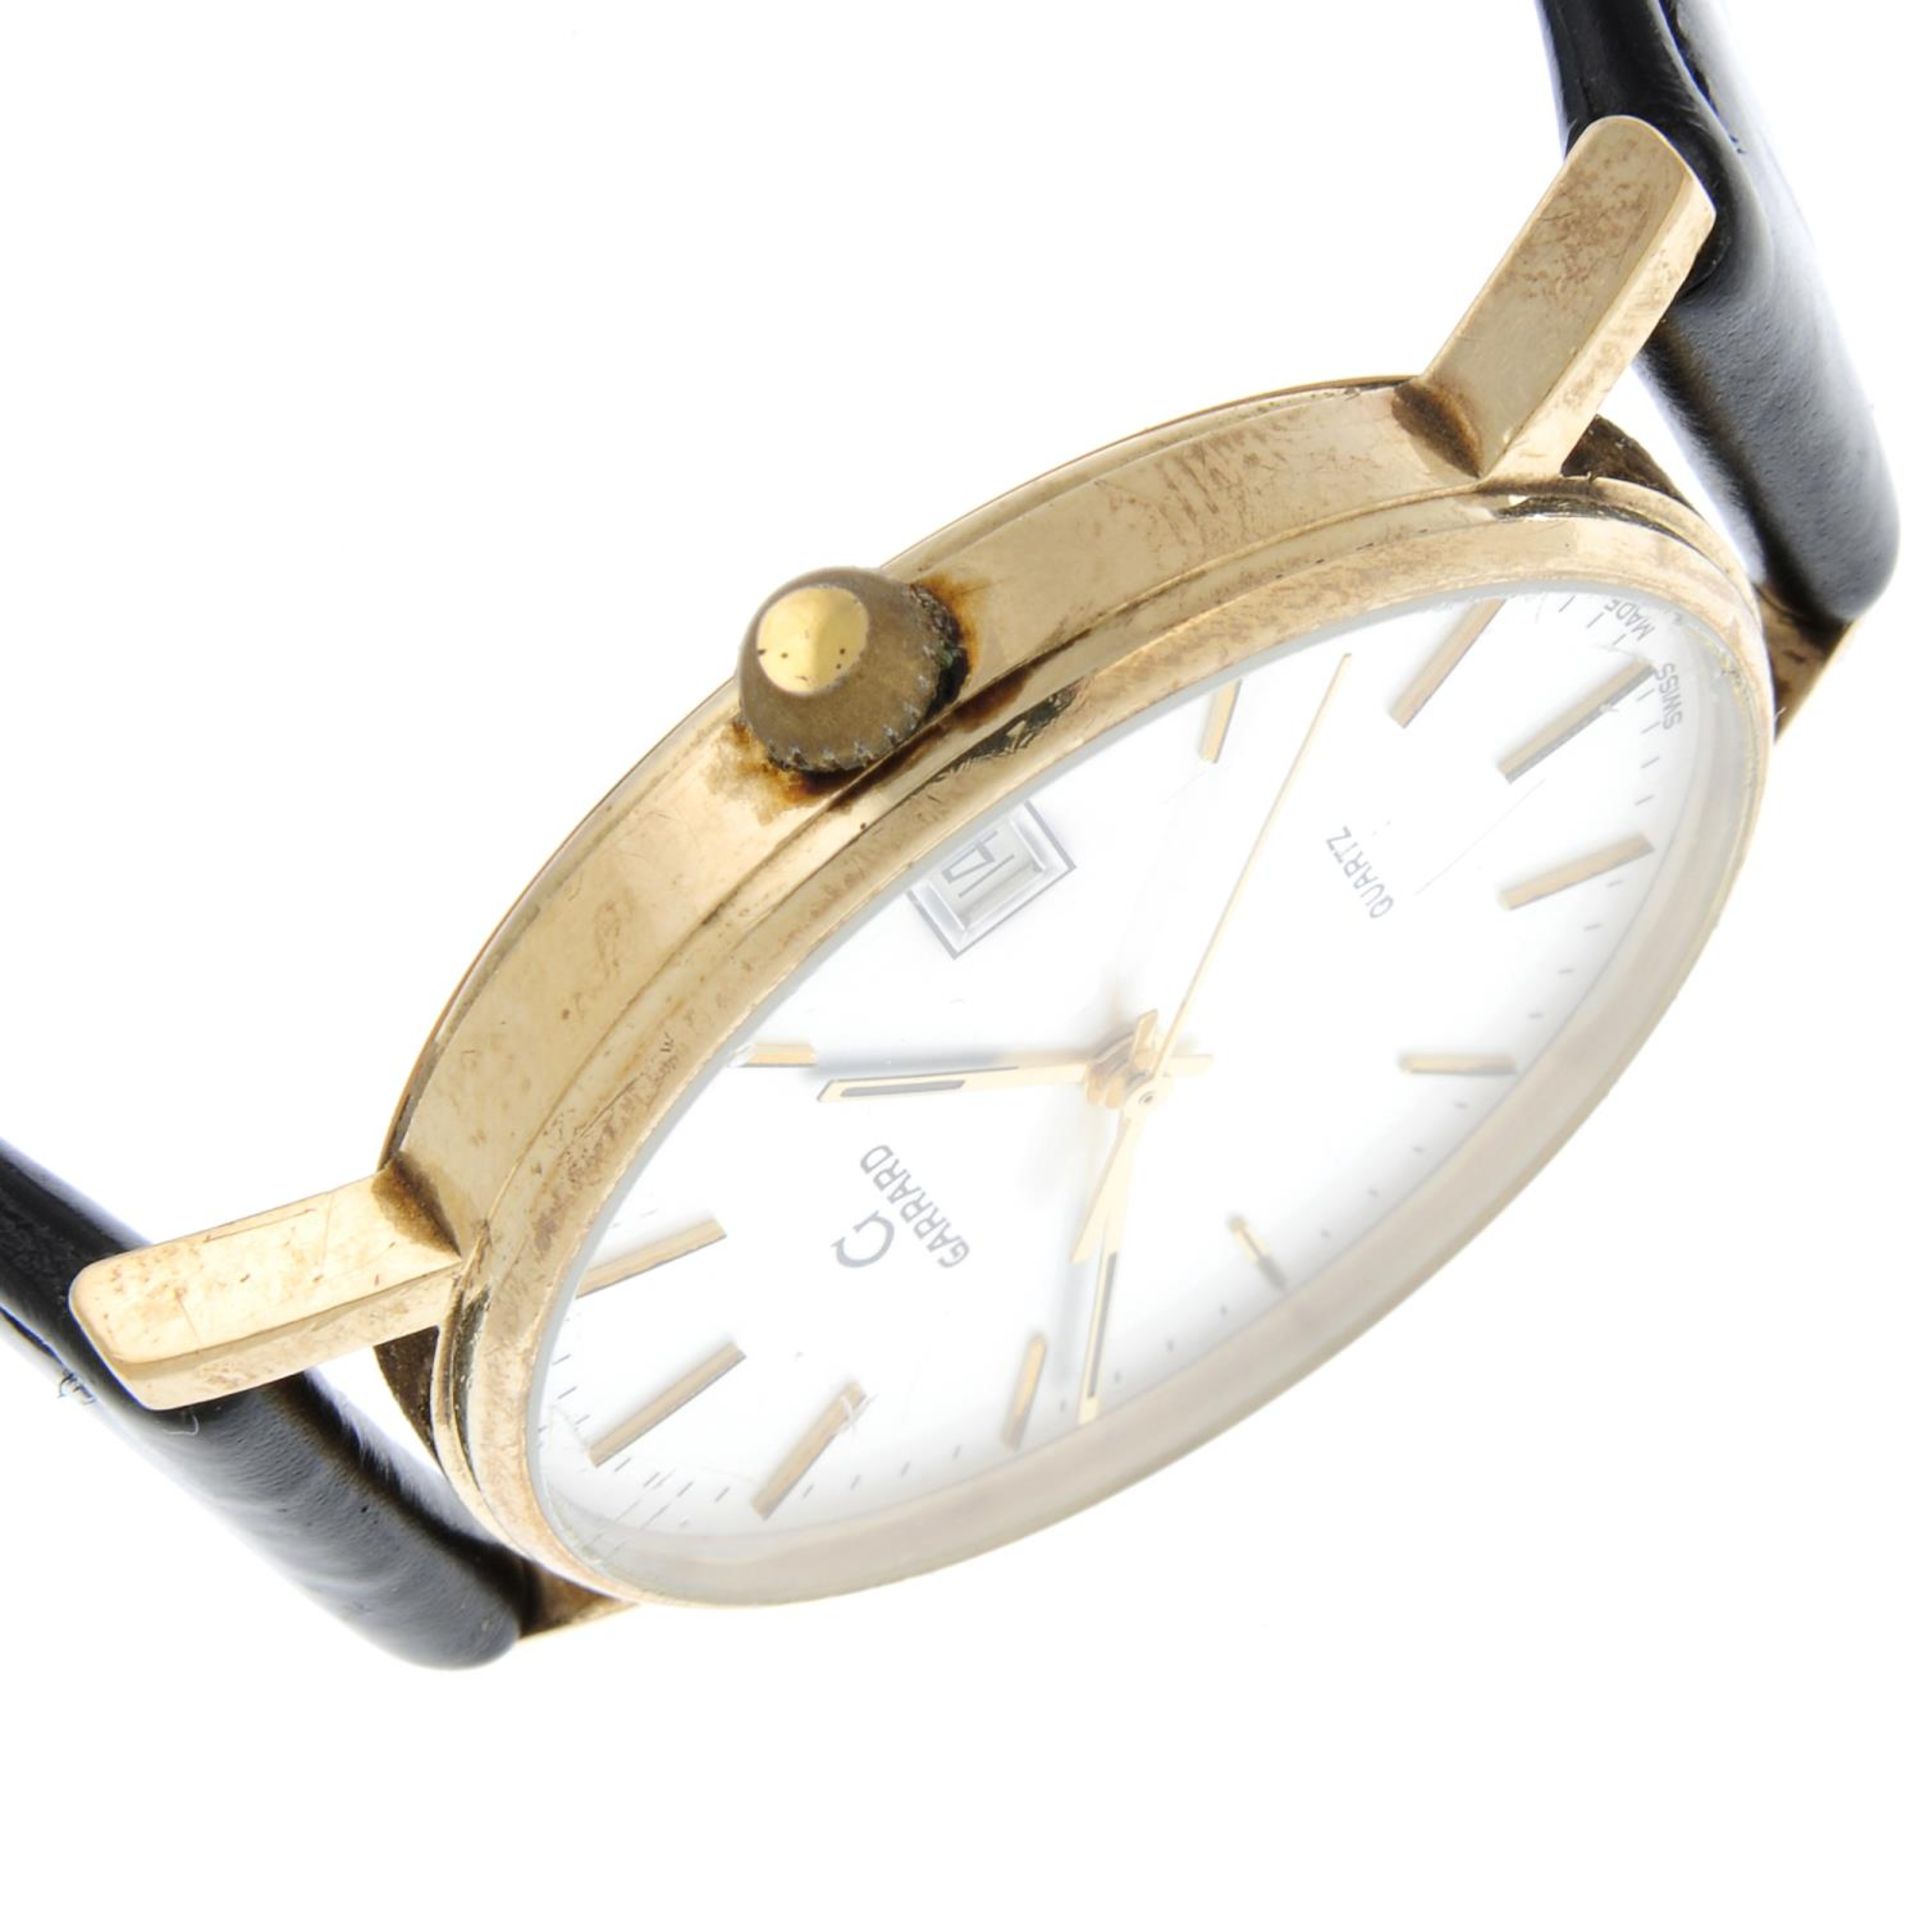 GARRARD - a gentleman's wrist watch. - Image 4 of 6